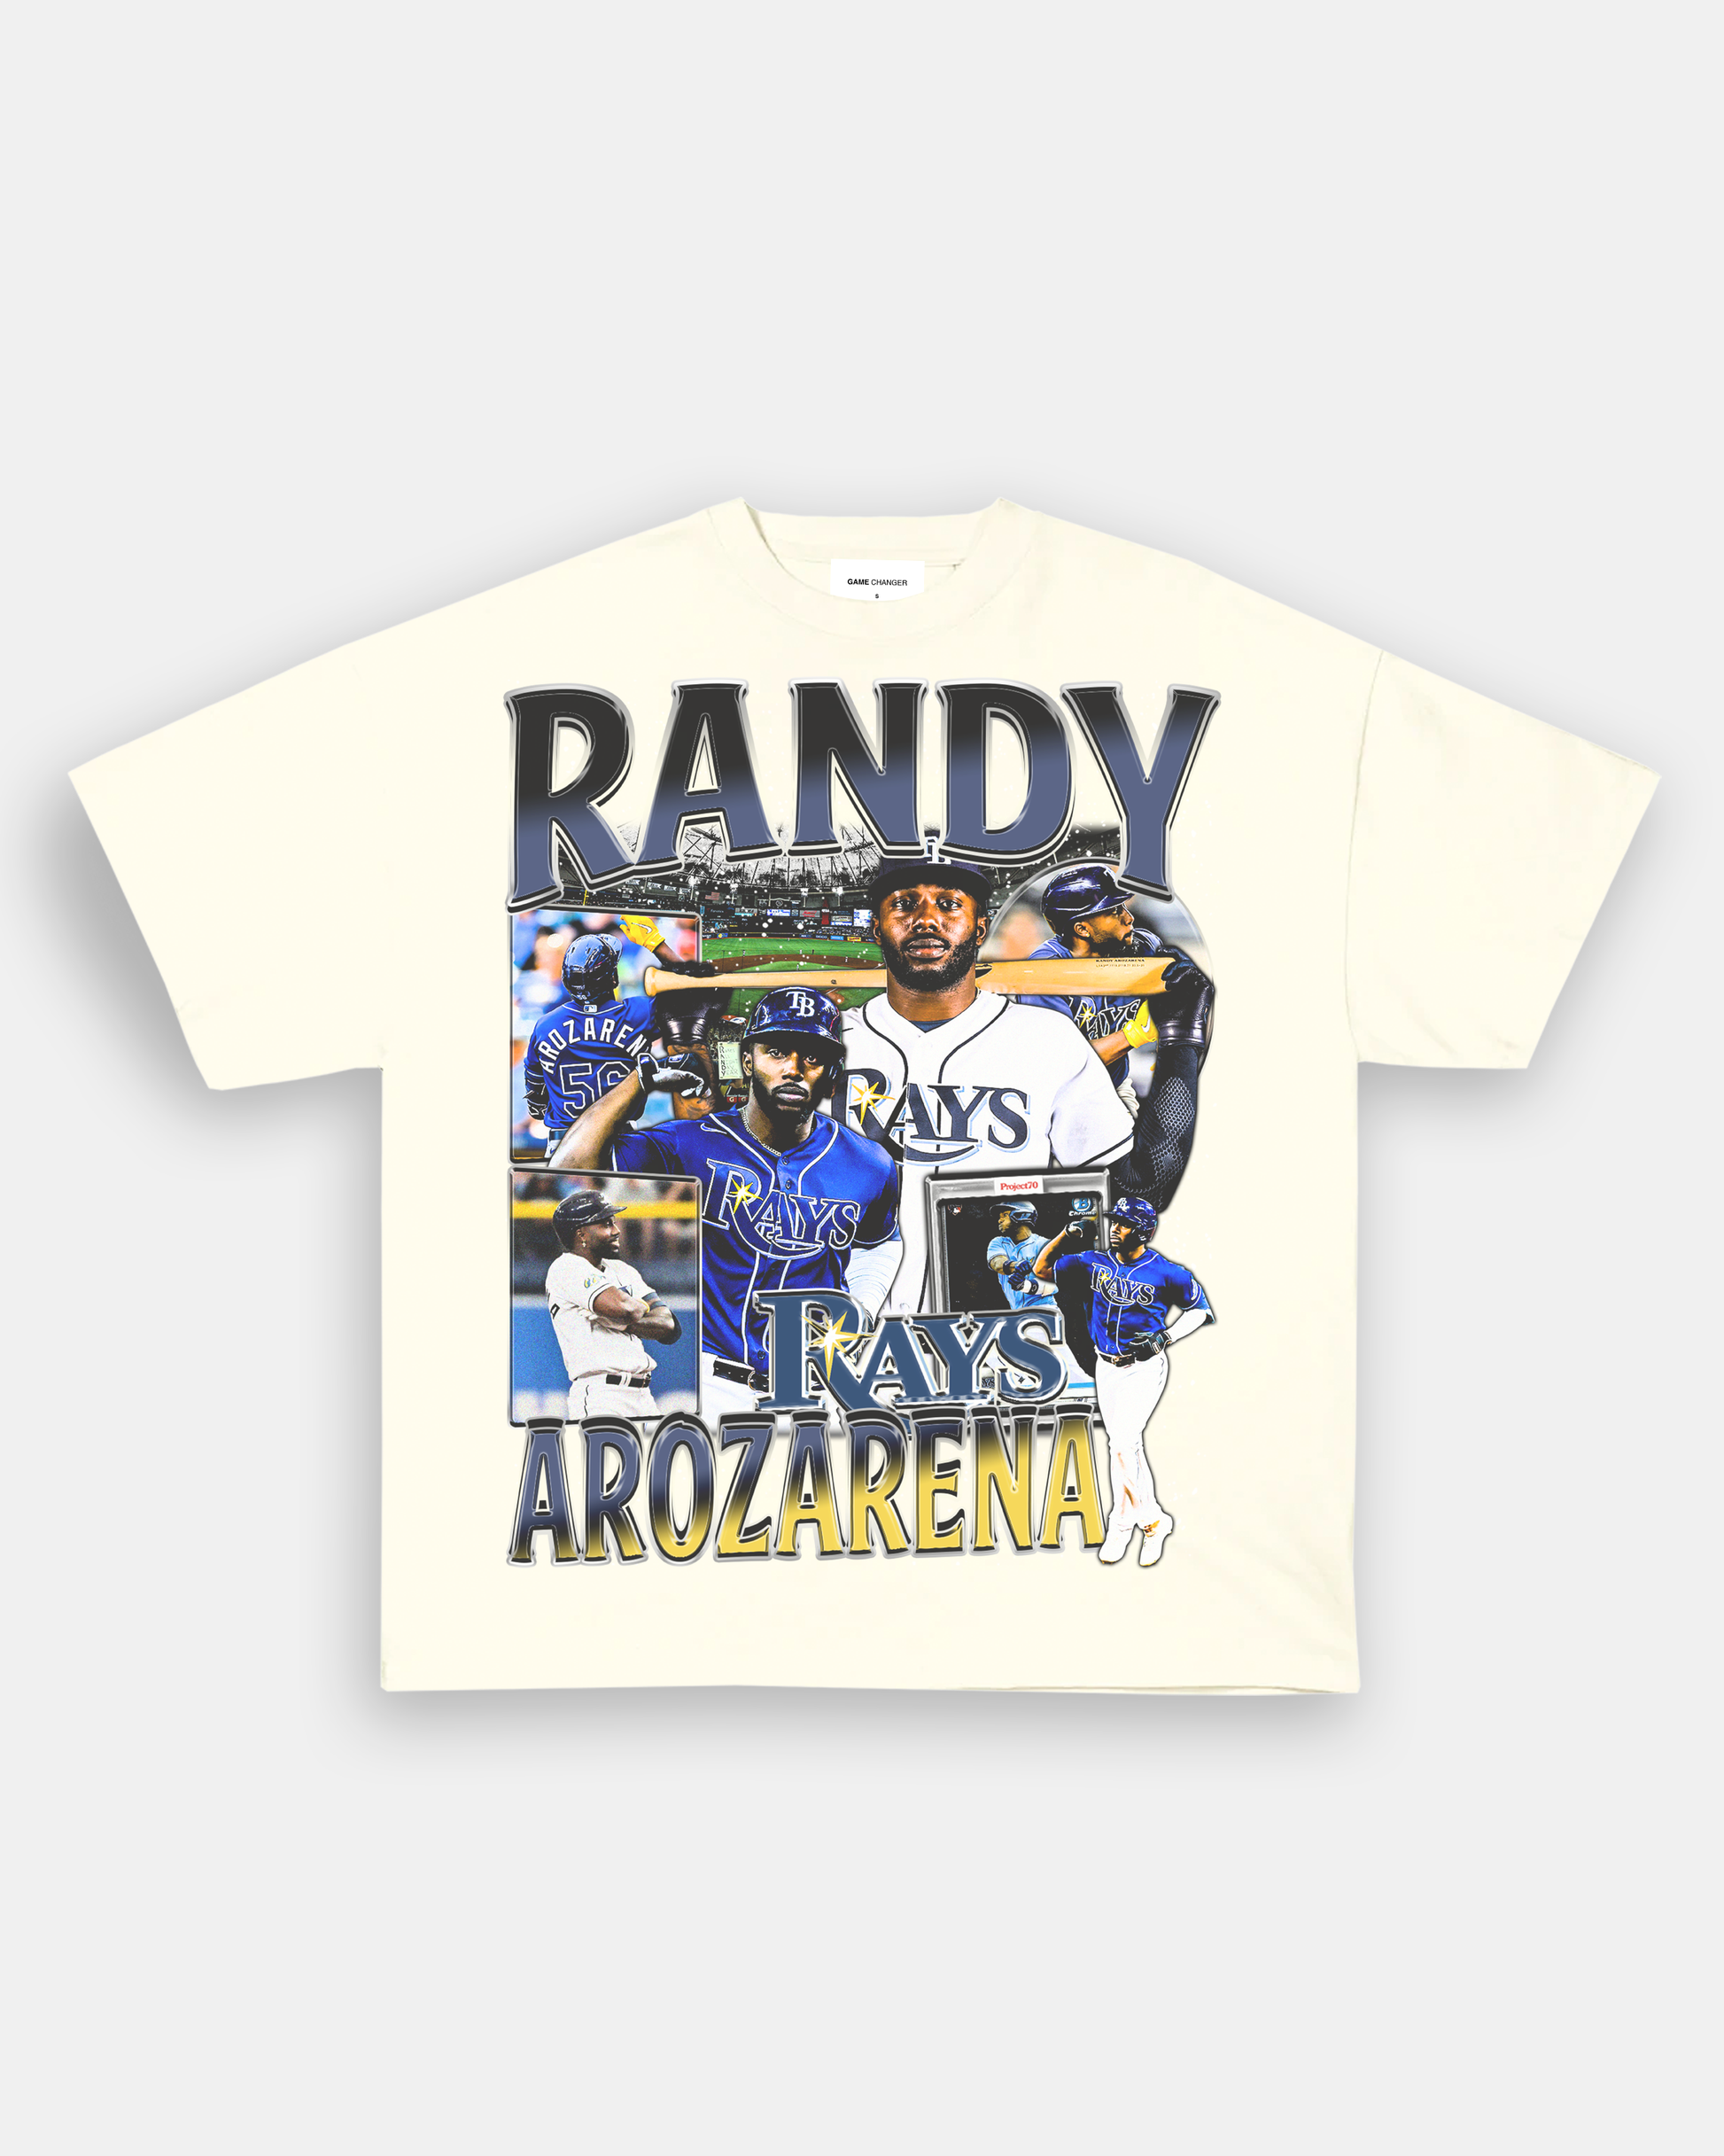 randy arozarena shirt